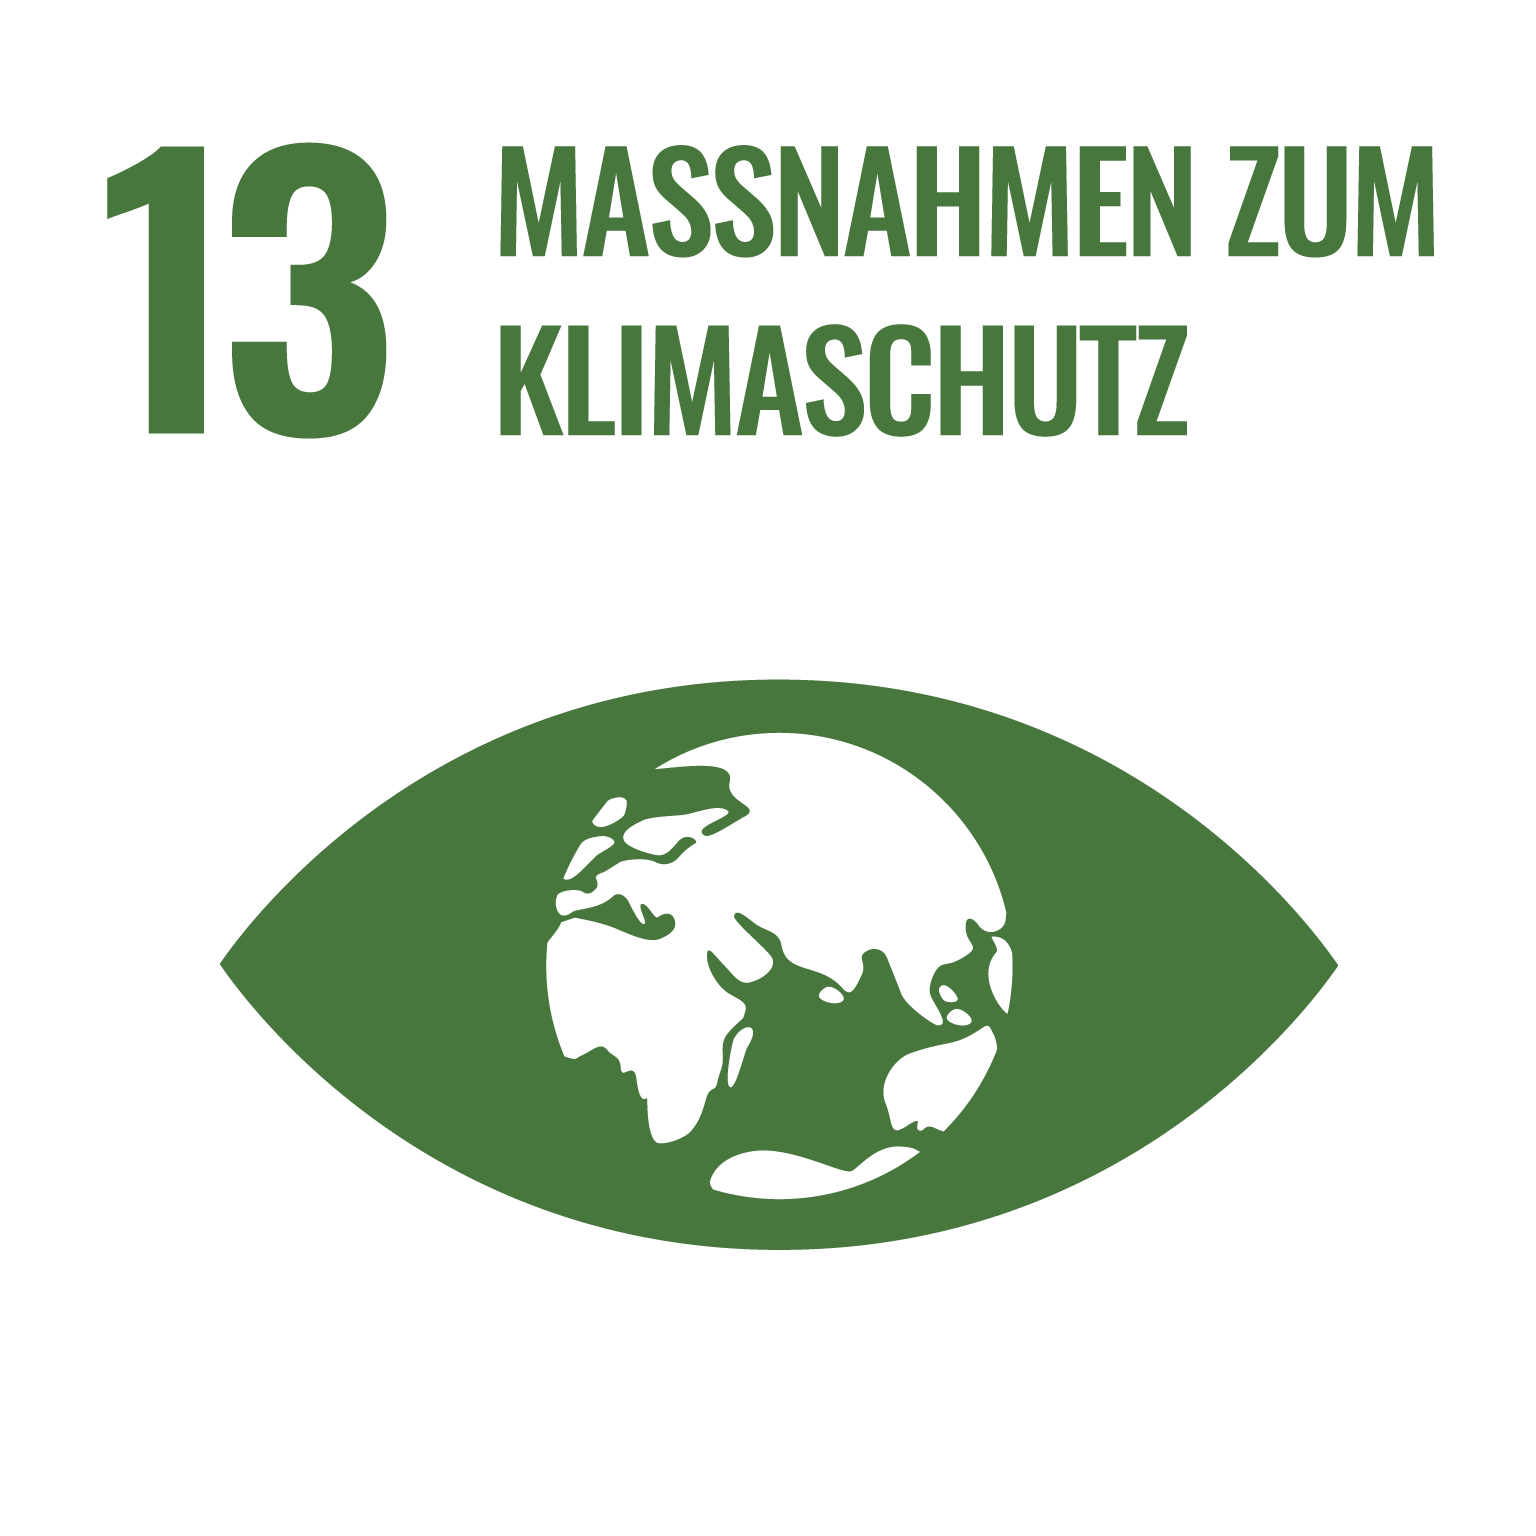 SDG 13